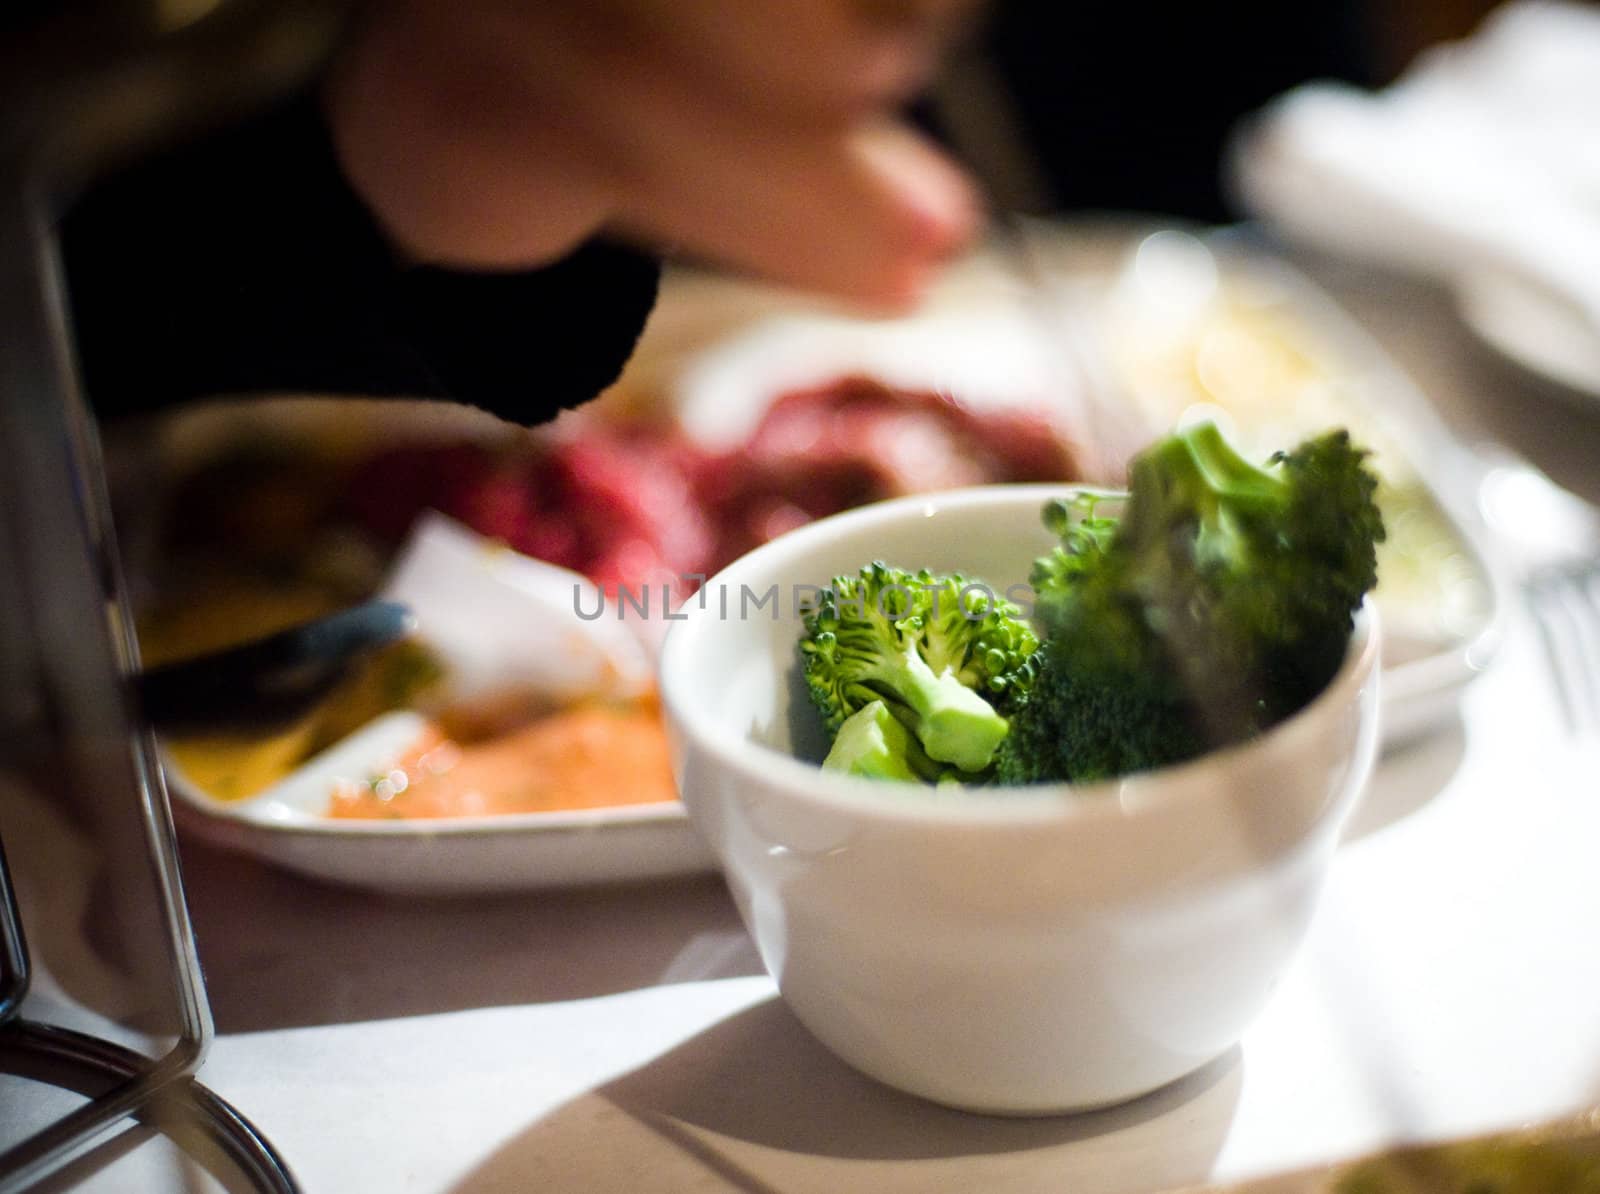 Broccoli in a bowl by edan